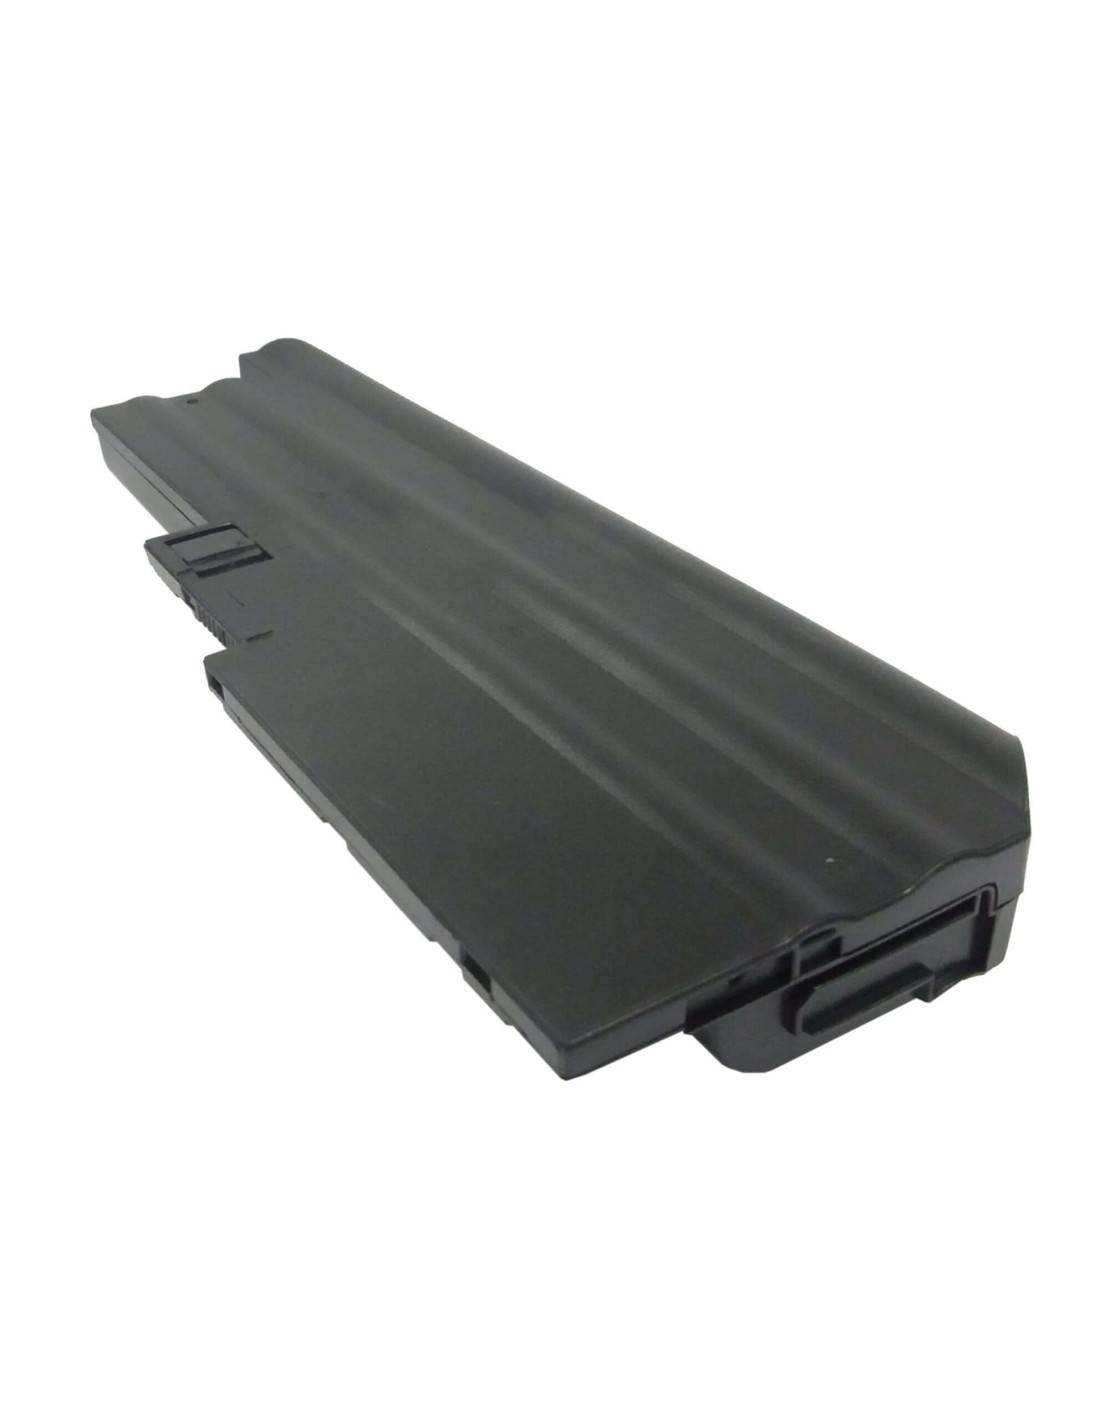 Black Battery for Ibm Thinkpad R60, Thinkpad R61, Thinkpad R60 9455 10.8V, 6600mAh - 71.28Wh